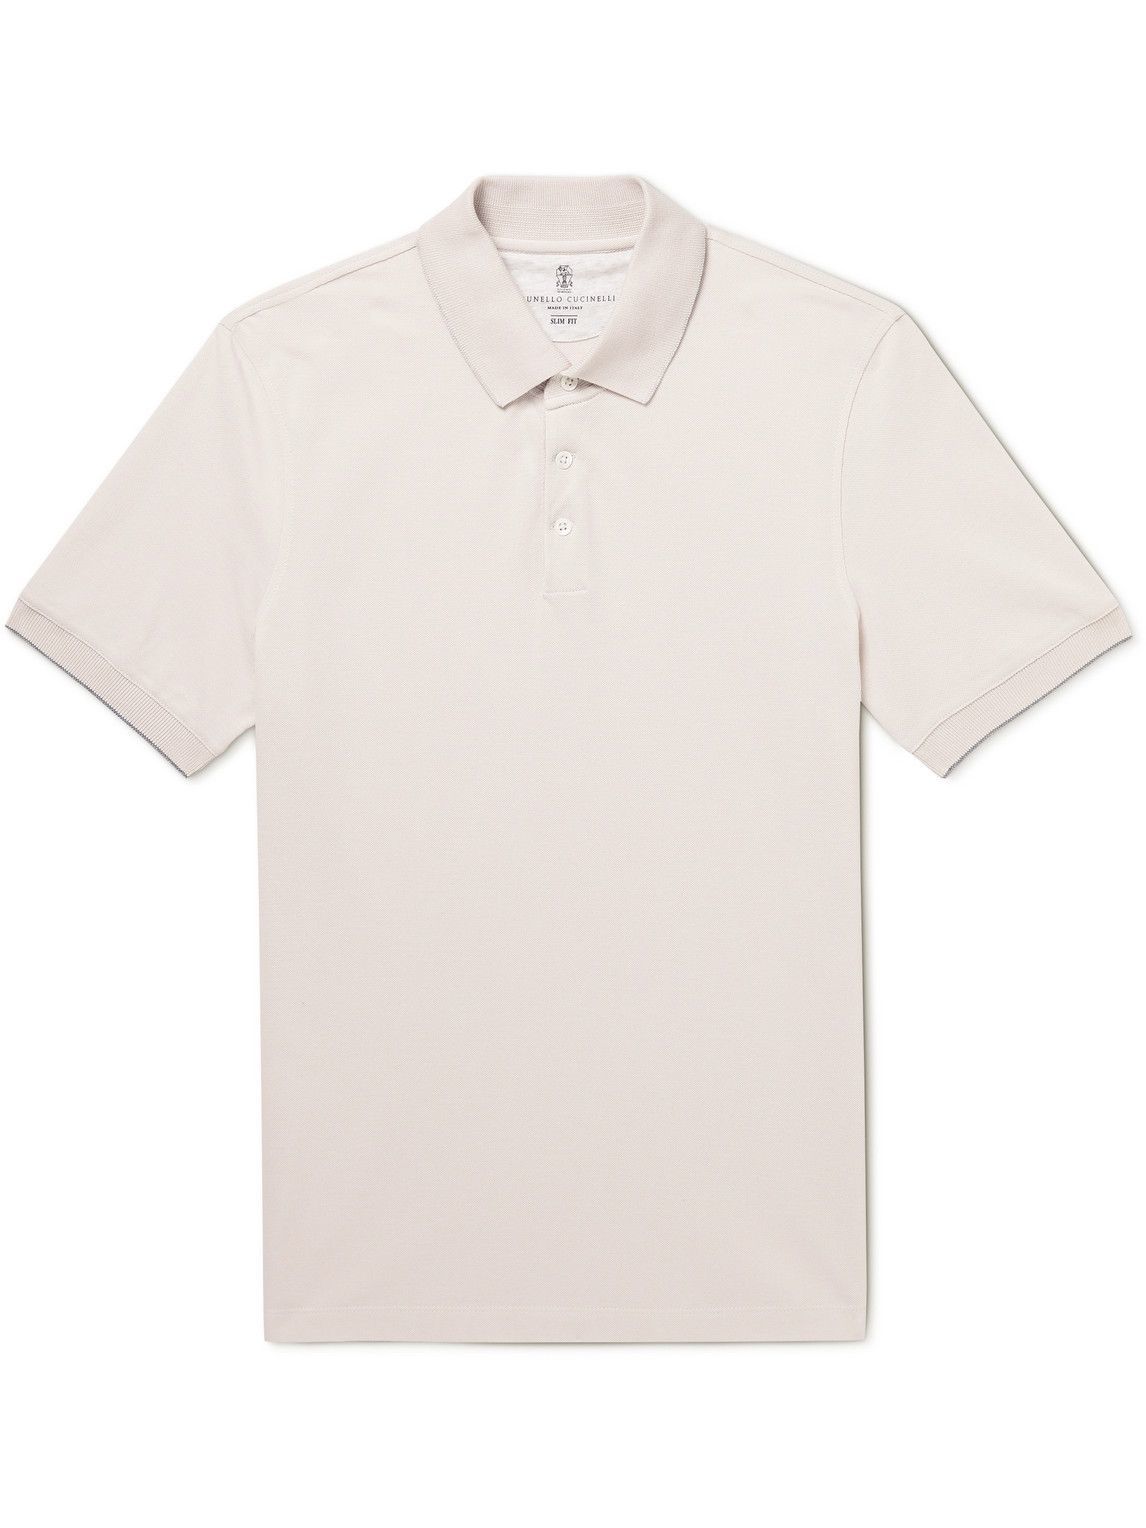 Brunello Cucinelli - Slim-Fit Cotton-Piqué Polo Shirt - Neutrals ...